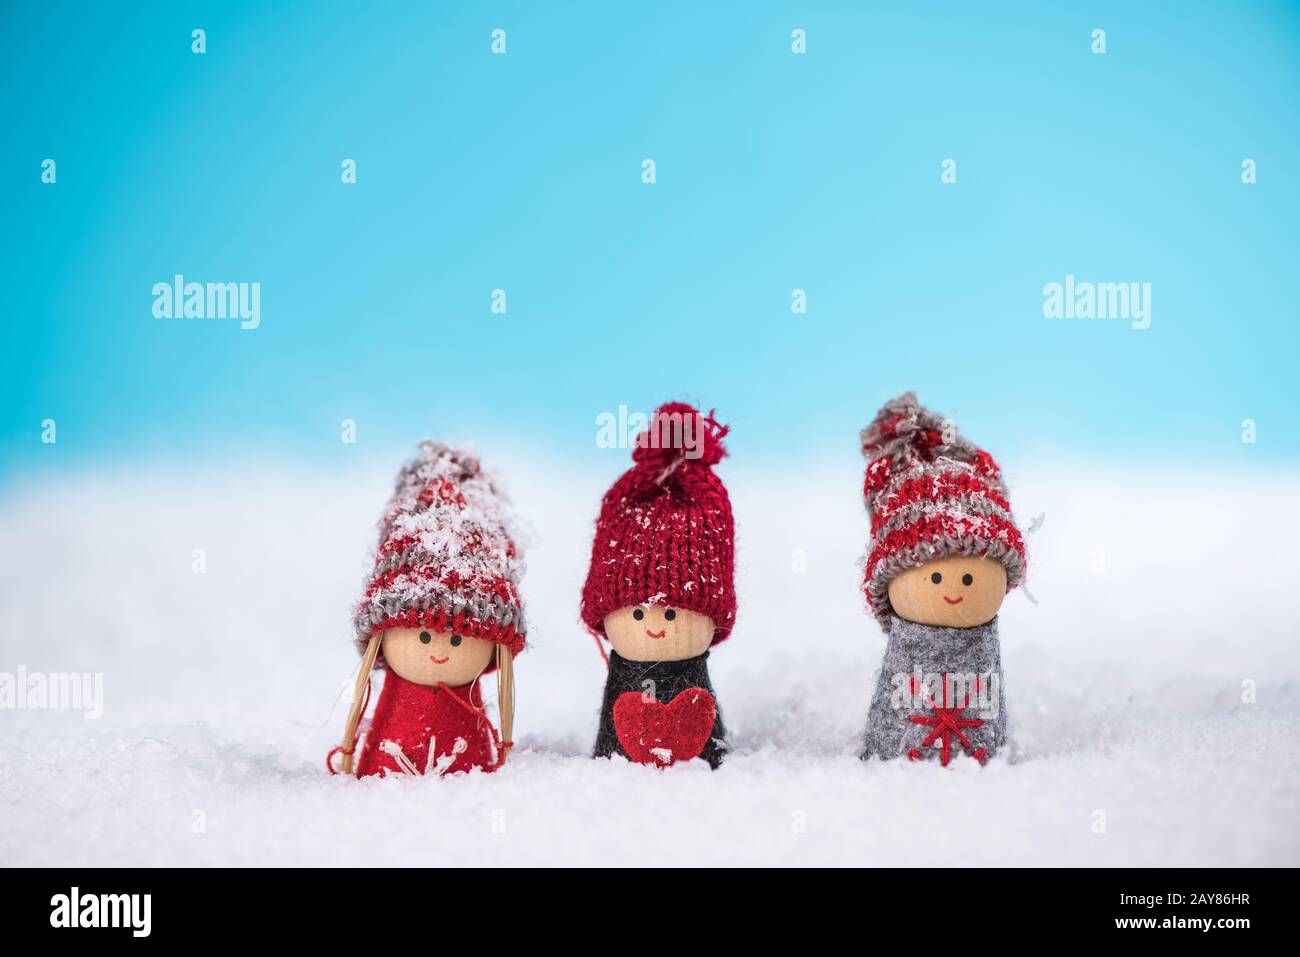 Les enfants heureux s'amusent dans la neige Banque D'Images